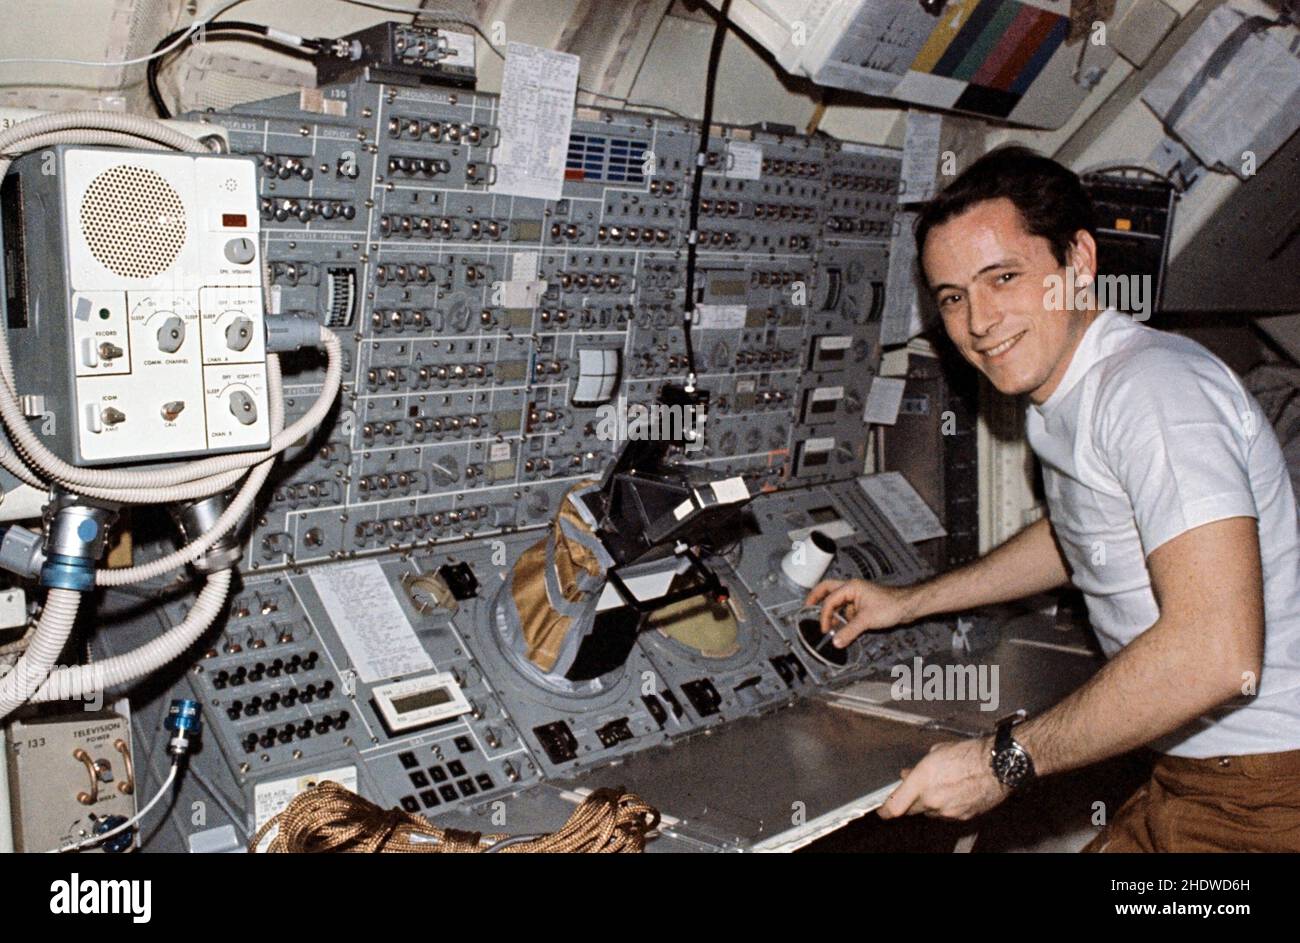 (5. Dezember 1973) --- der Wissenschaftler-Astronaut Edward G. Gibson, Wissenschaftspilot Skylab 4, steht an der Konsole des Apollo Telescope Mount (ATM) im Multiple Docking Adapter (MDA) des Skylab-Raumstation-Clusters in der Erdumlaufbahn. Dieses Bild wurde mit einer handgehaltenen Nikon-Kamera 35mm aufgenommen. Die ATM-Konsole war während der 84-tägigen dritten bemannten Skylab-Mission einer der belebtesten Bereiche der Raumstation, da Comet Kohoutek und die Sonnenaktivität vom ATM genau verfolgt und von den Besatzern von der ATM-Konsole aus überwacht wurden. Wie Gibson während einer Fernsehübertragung am 5. Dezember 1973 demonstrierte, konso der Geldautomaten Stockfoto